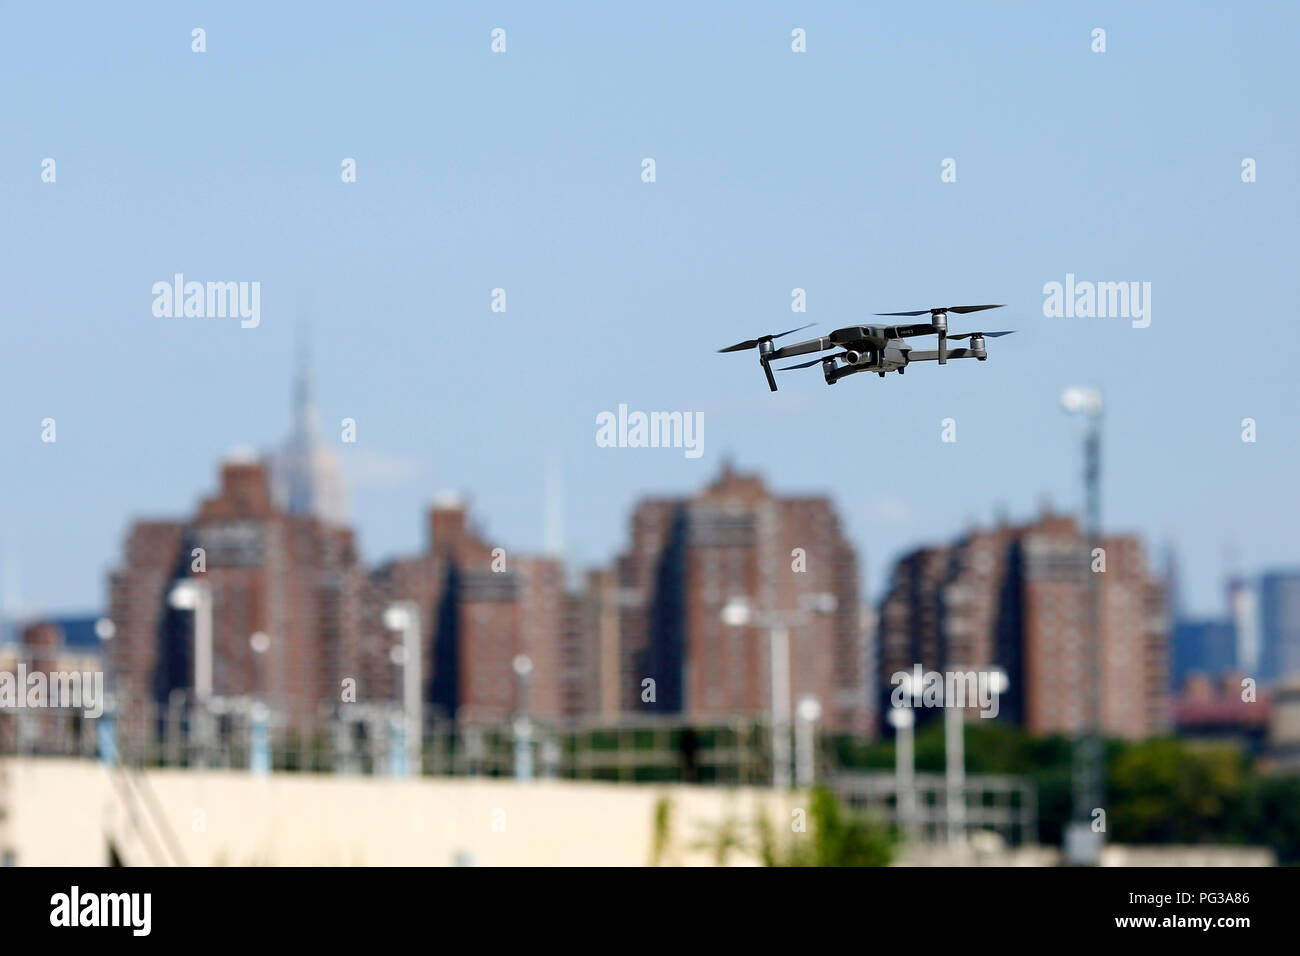 Nueva York, Estados Unidos. 23 Aug, 2018. Foto tomada el 23 de agosto de  2018, muestra el recién liberado DJI Mavic 2 drone Zoom durante la  ceremonia de lanzamiento en Nueva York,